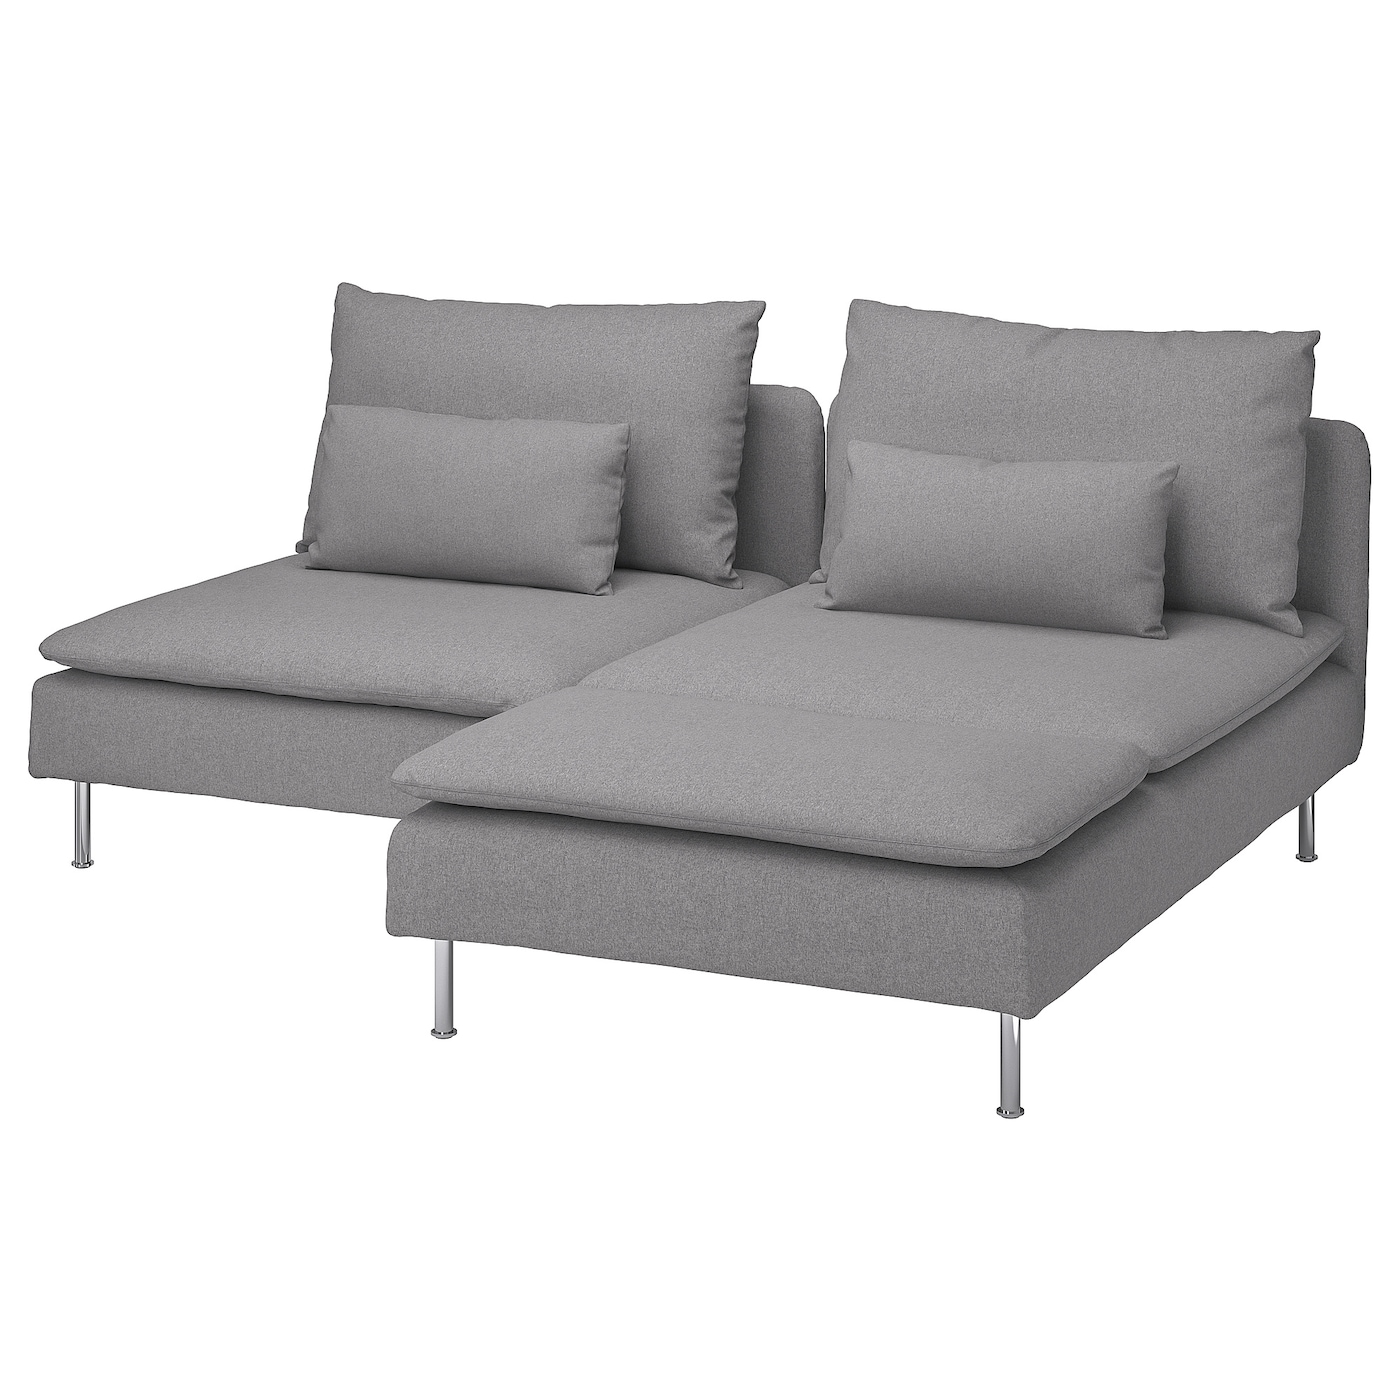 2-местный диван - IKEA SÖDERHAMN/SODERHAMN, 99x186см, серый, СЕДЕРХАМН ИКЕА